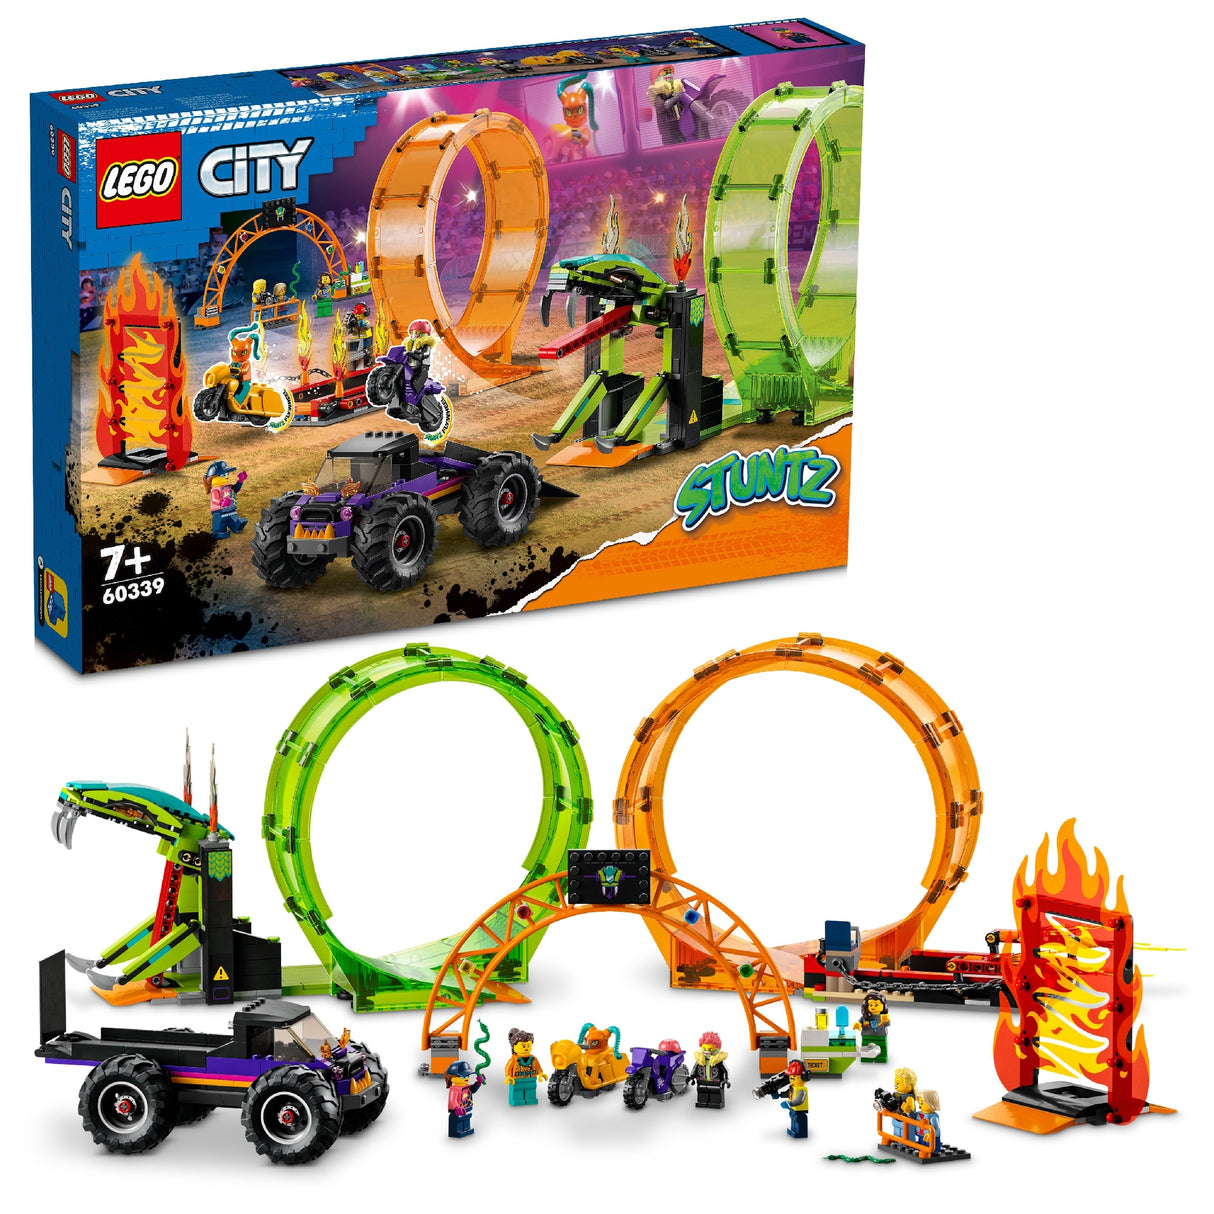 LEGO CITY DOUBLE LOOP STUNT ARENA 60339 AGE: 7+